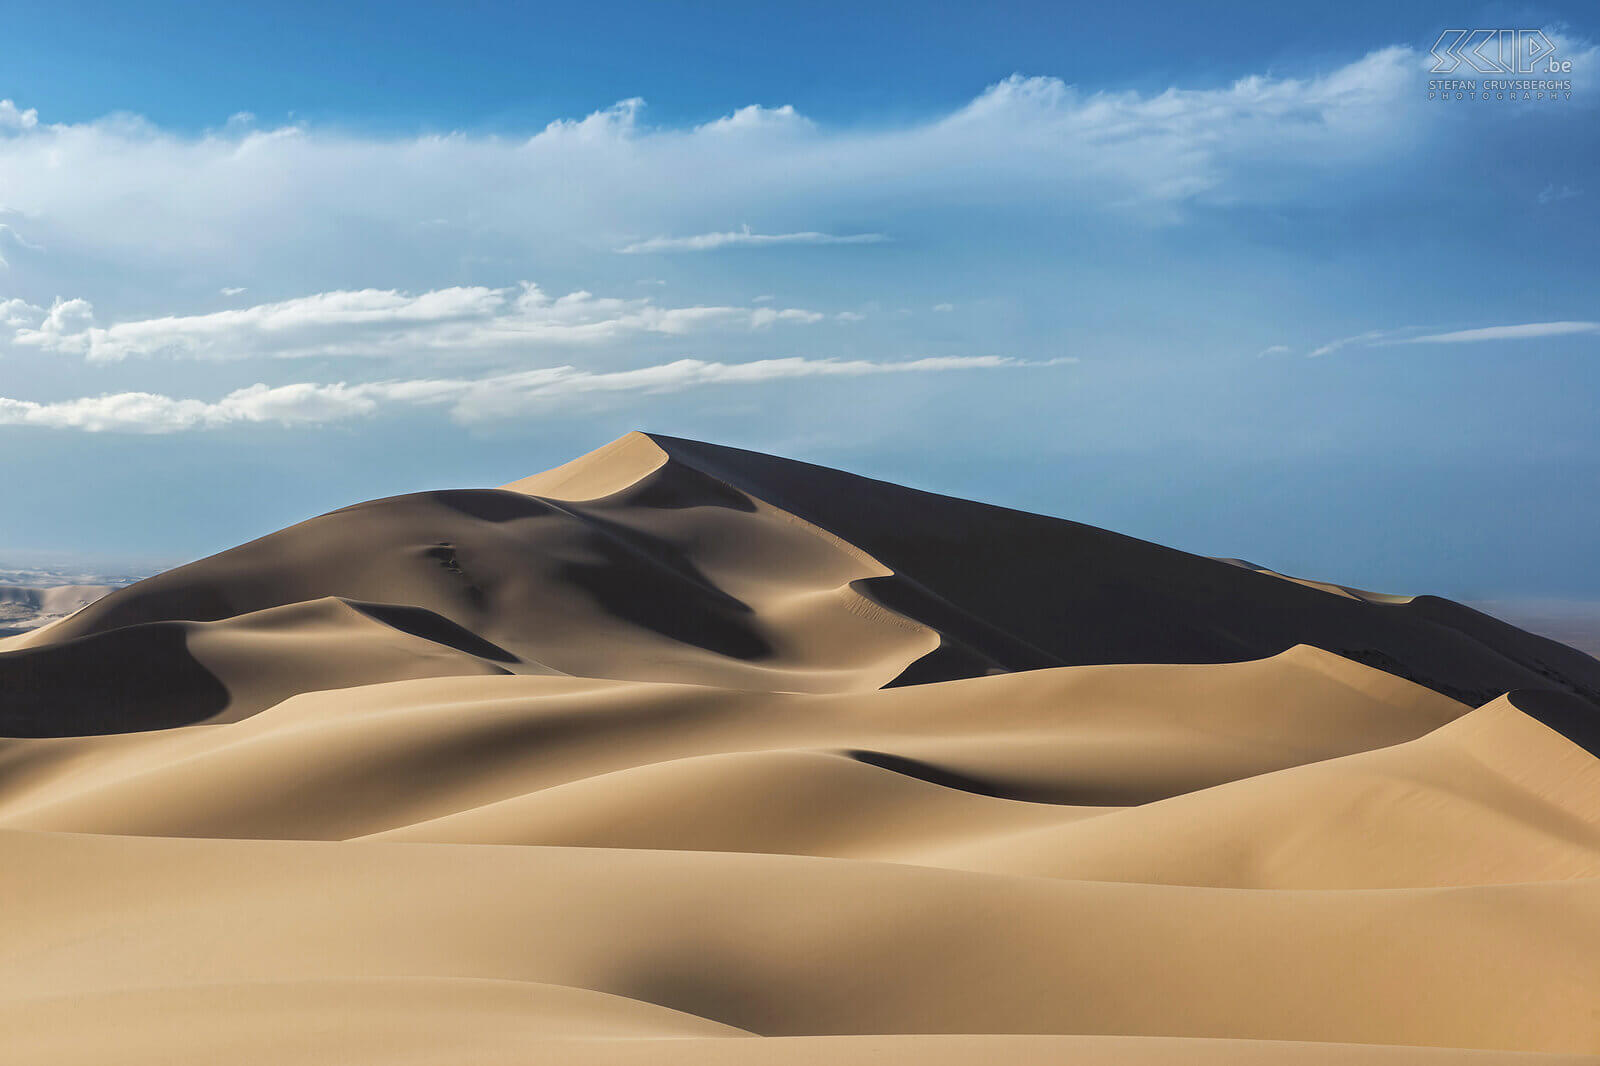 Gobi - Khongoryn Els Khongoryn Els ook wel bekend als de ‘Singing dunes’ zijn de bekendste en hoogste zandduinen van het Gobi Gurvan Saikhan national park. Stefan Cruysberghs